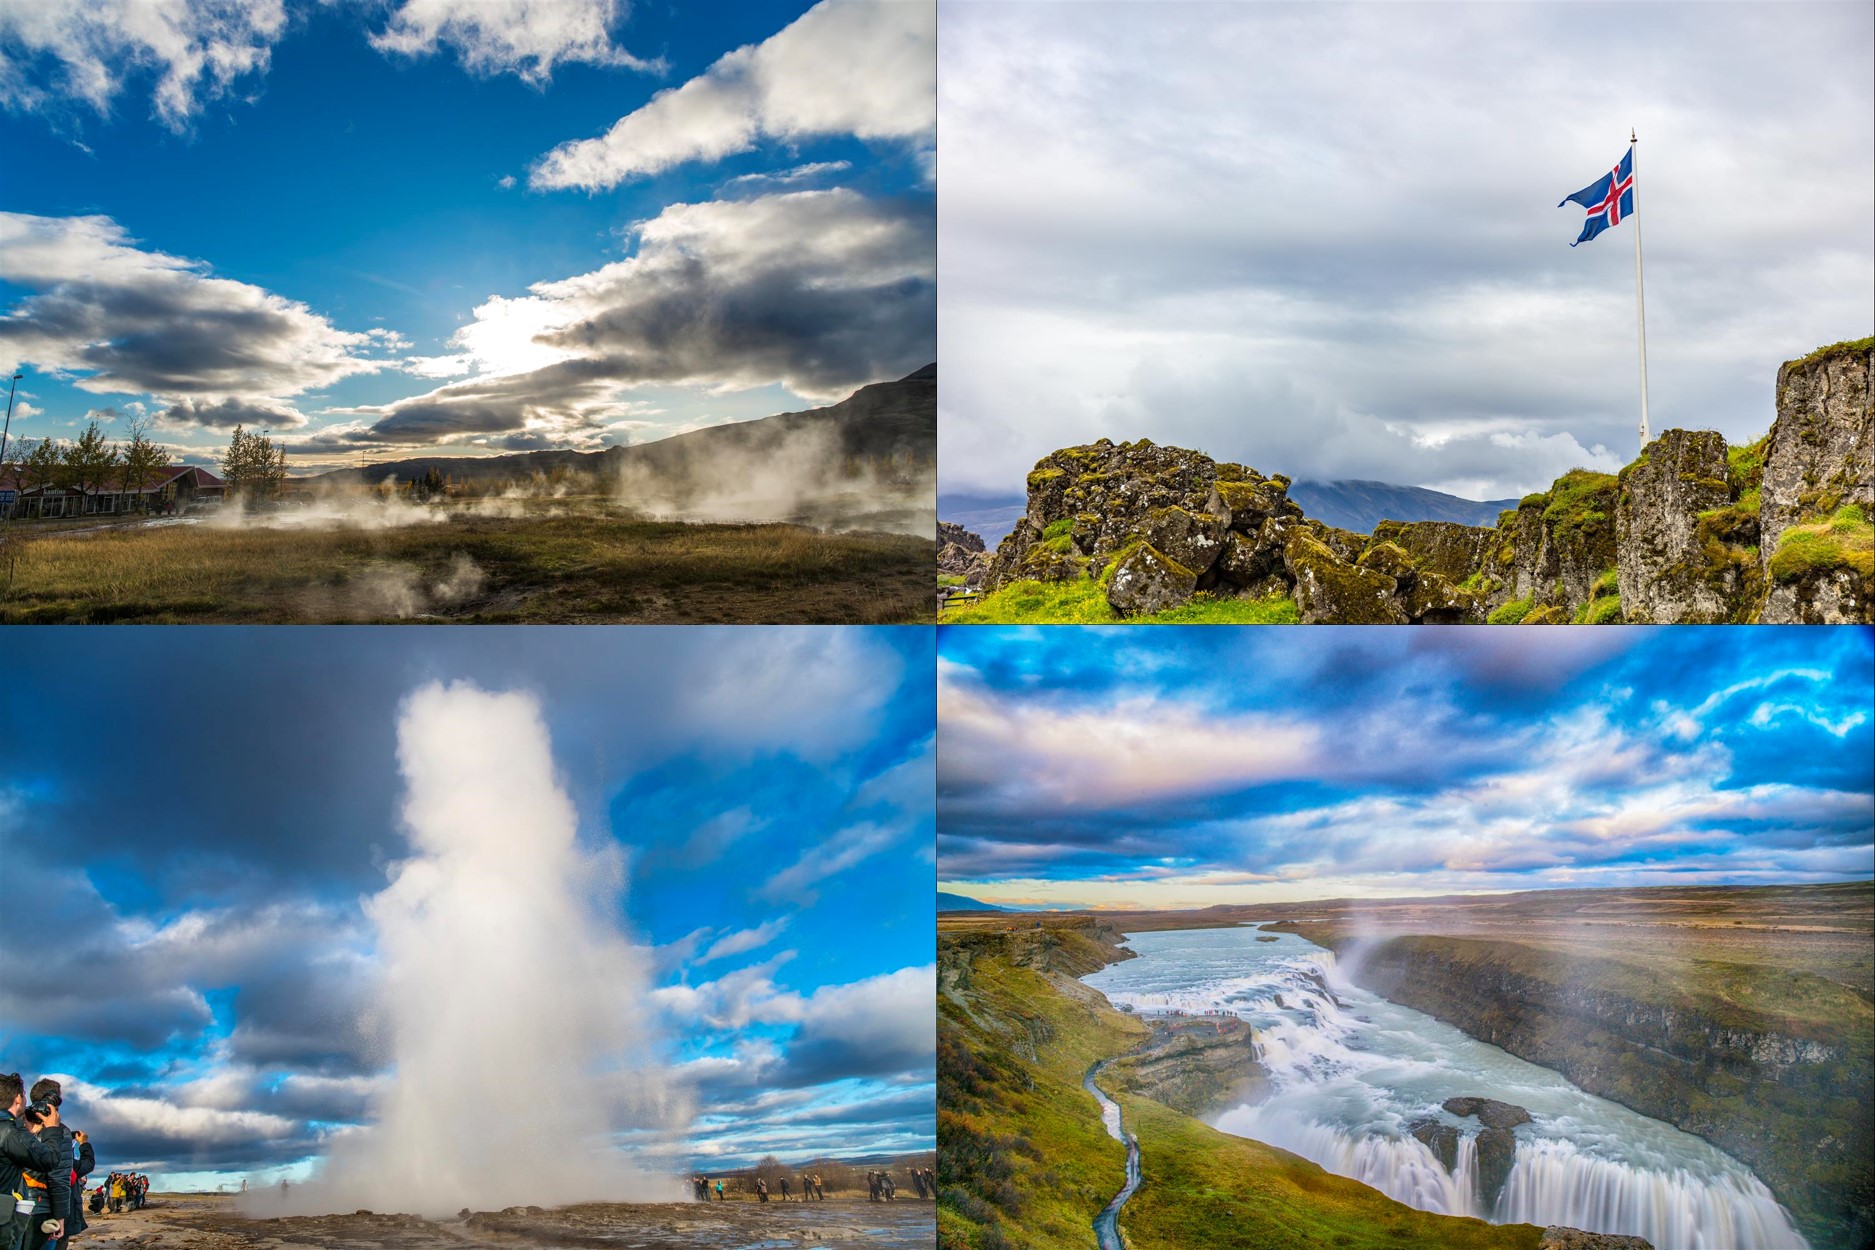 浪漫冰島 - 10 日冰島攝影團，專為喜好攝影朋友設計冰島旅行